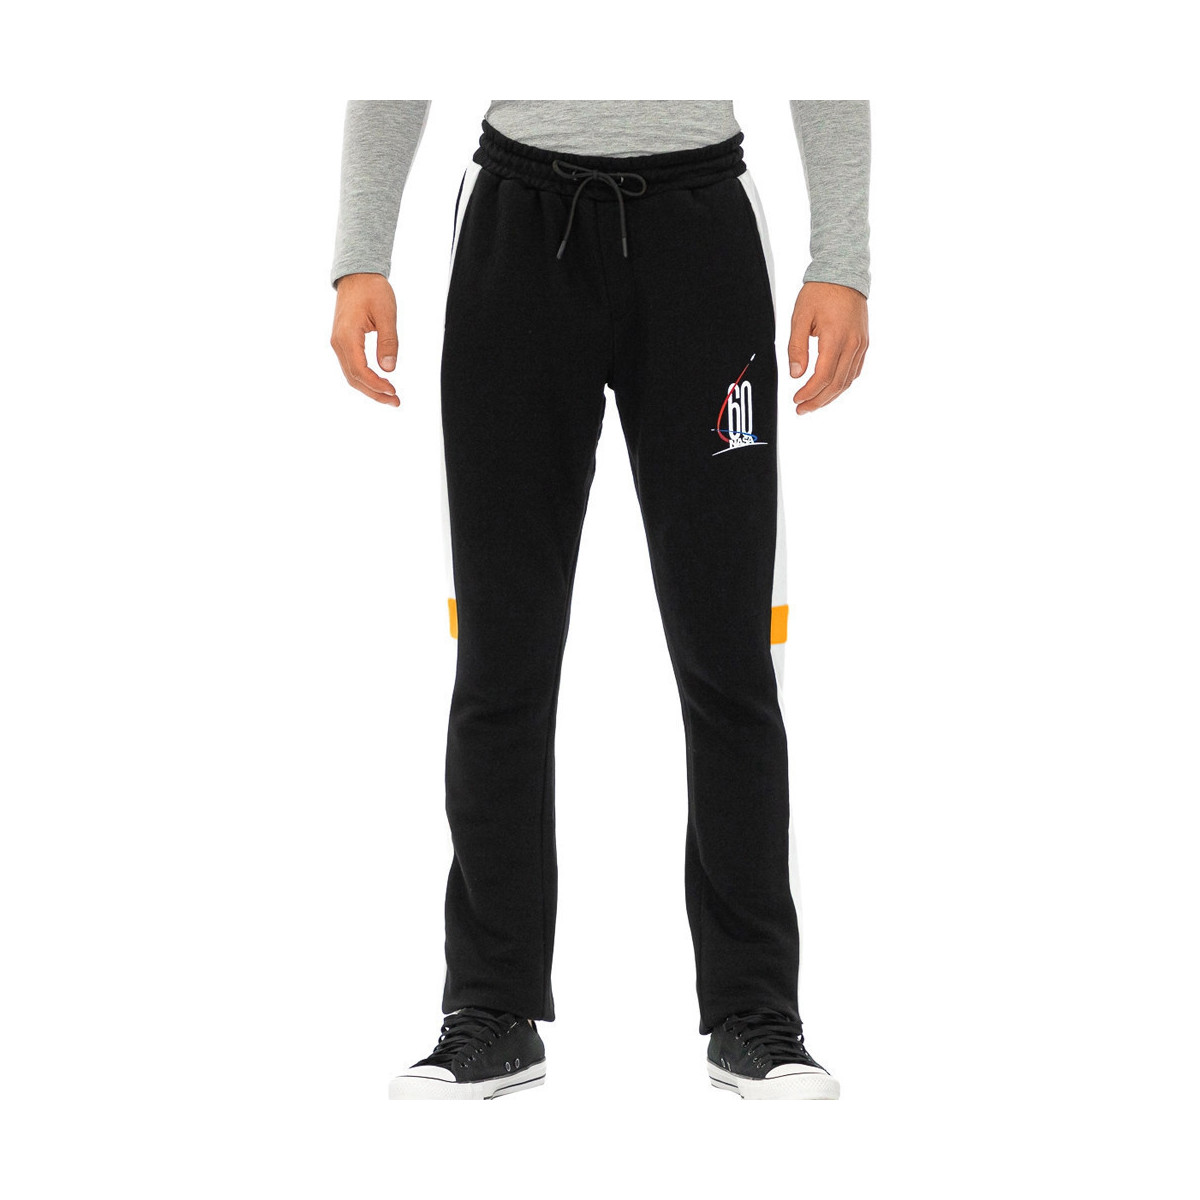 Vêtements Homme Pantalons de survêtement Nasa -NASA55P Noir